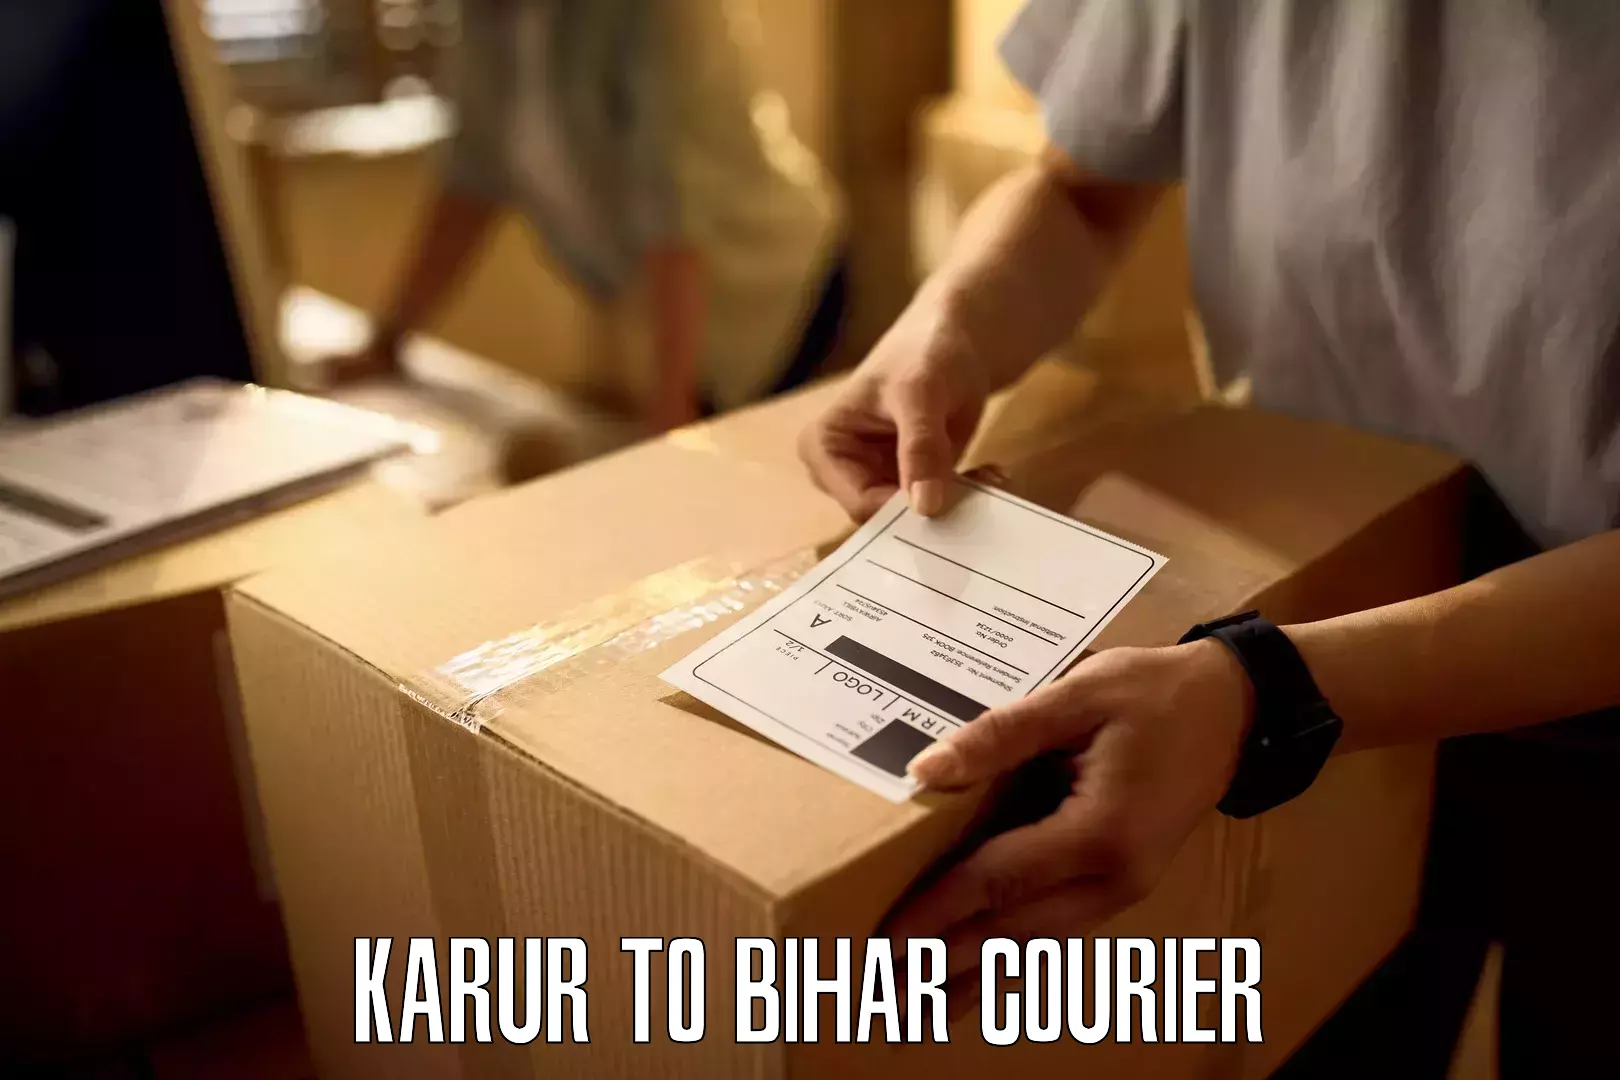 Efficient freight service Karur to Bihar